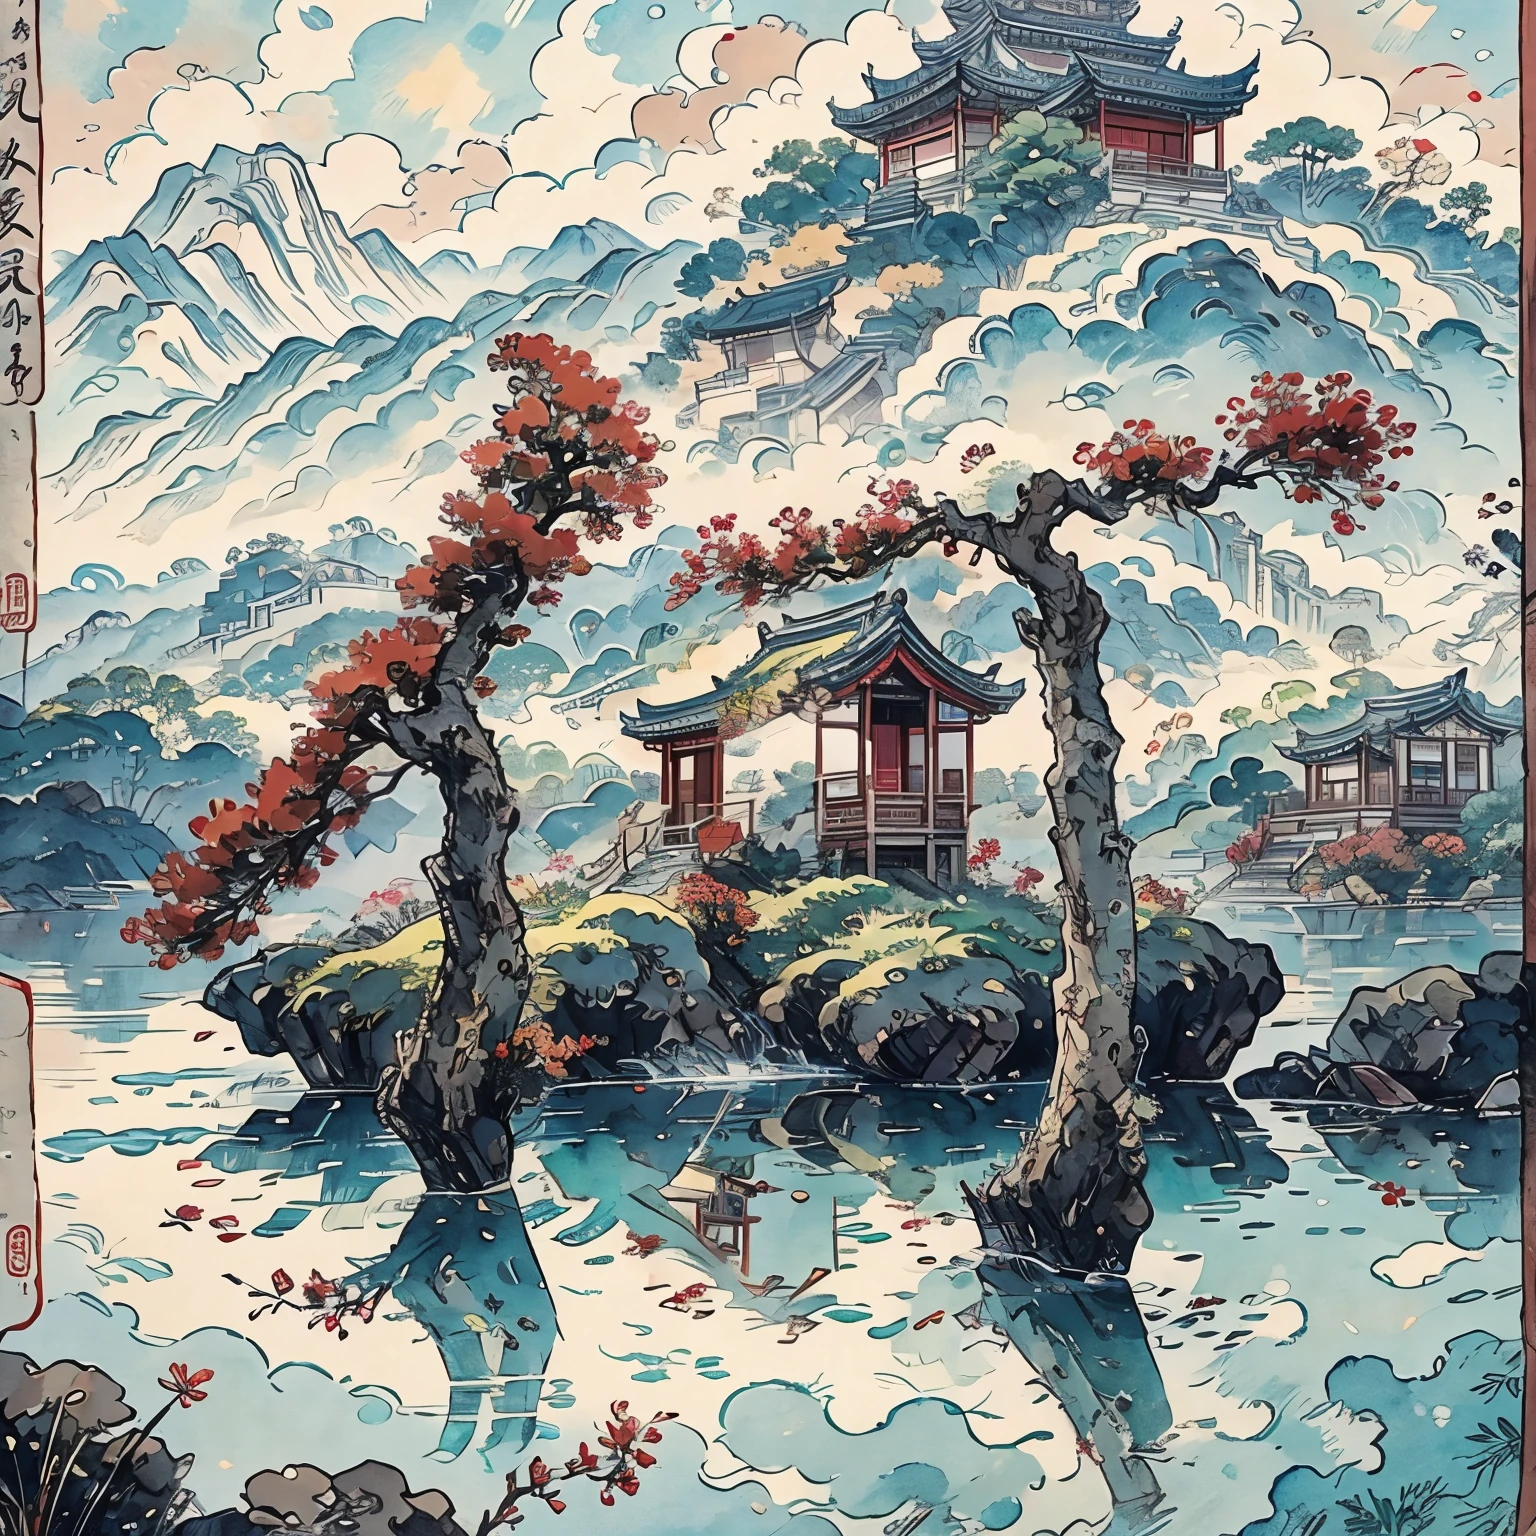 لوحة جبلية مع معبد على جزيرة صغيرة, نمط الألوان المائية الصينية, أسلوب الرسم الصيني, اللوحة الرقمية للمعبد, المناظر الطبيعية الصينية, الرسم بالألوان المائية الصينية التقليدية, الرسم على الطريقة الصينية, أسلوب الفن الياباني, ألوان مائية مفصلة للغاية 8K, ألوان مائية مفصلة للغاية 8 ك, اللوحة التفصيلية 4 ك, مؤلف：بطل, اللوحة اليابانية, مؤلف：تشو ليل